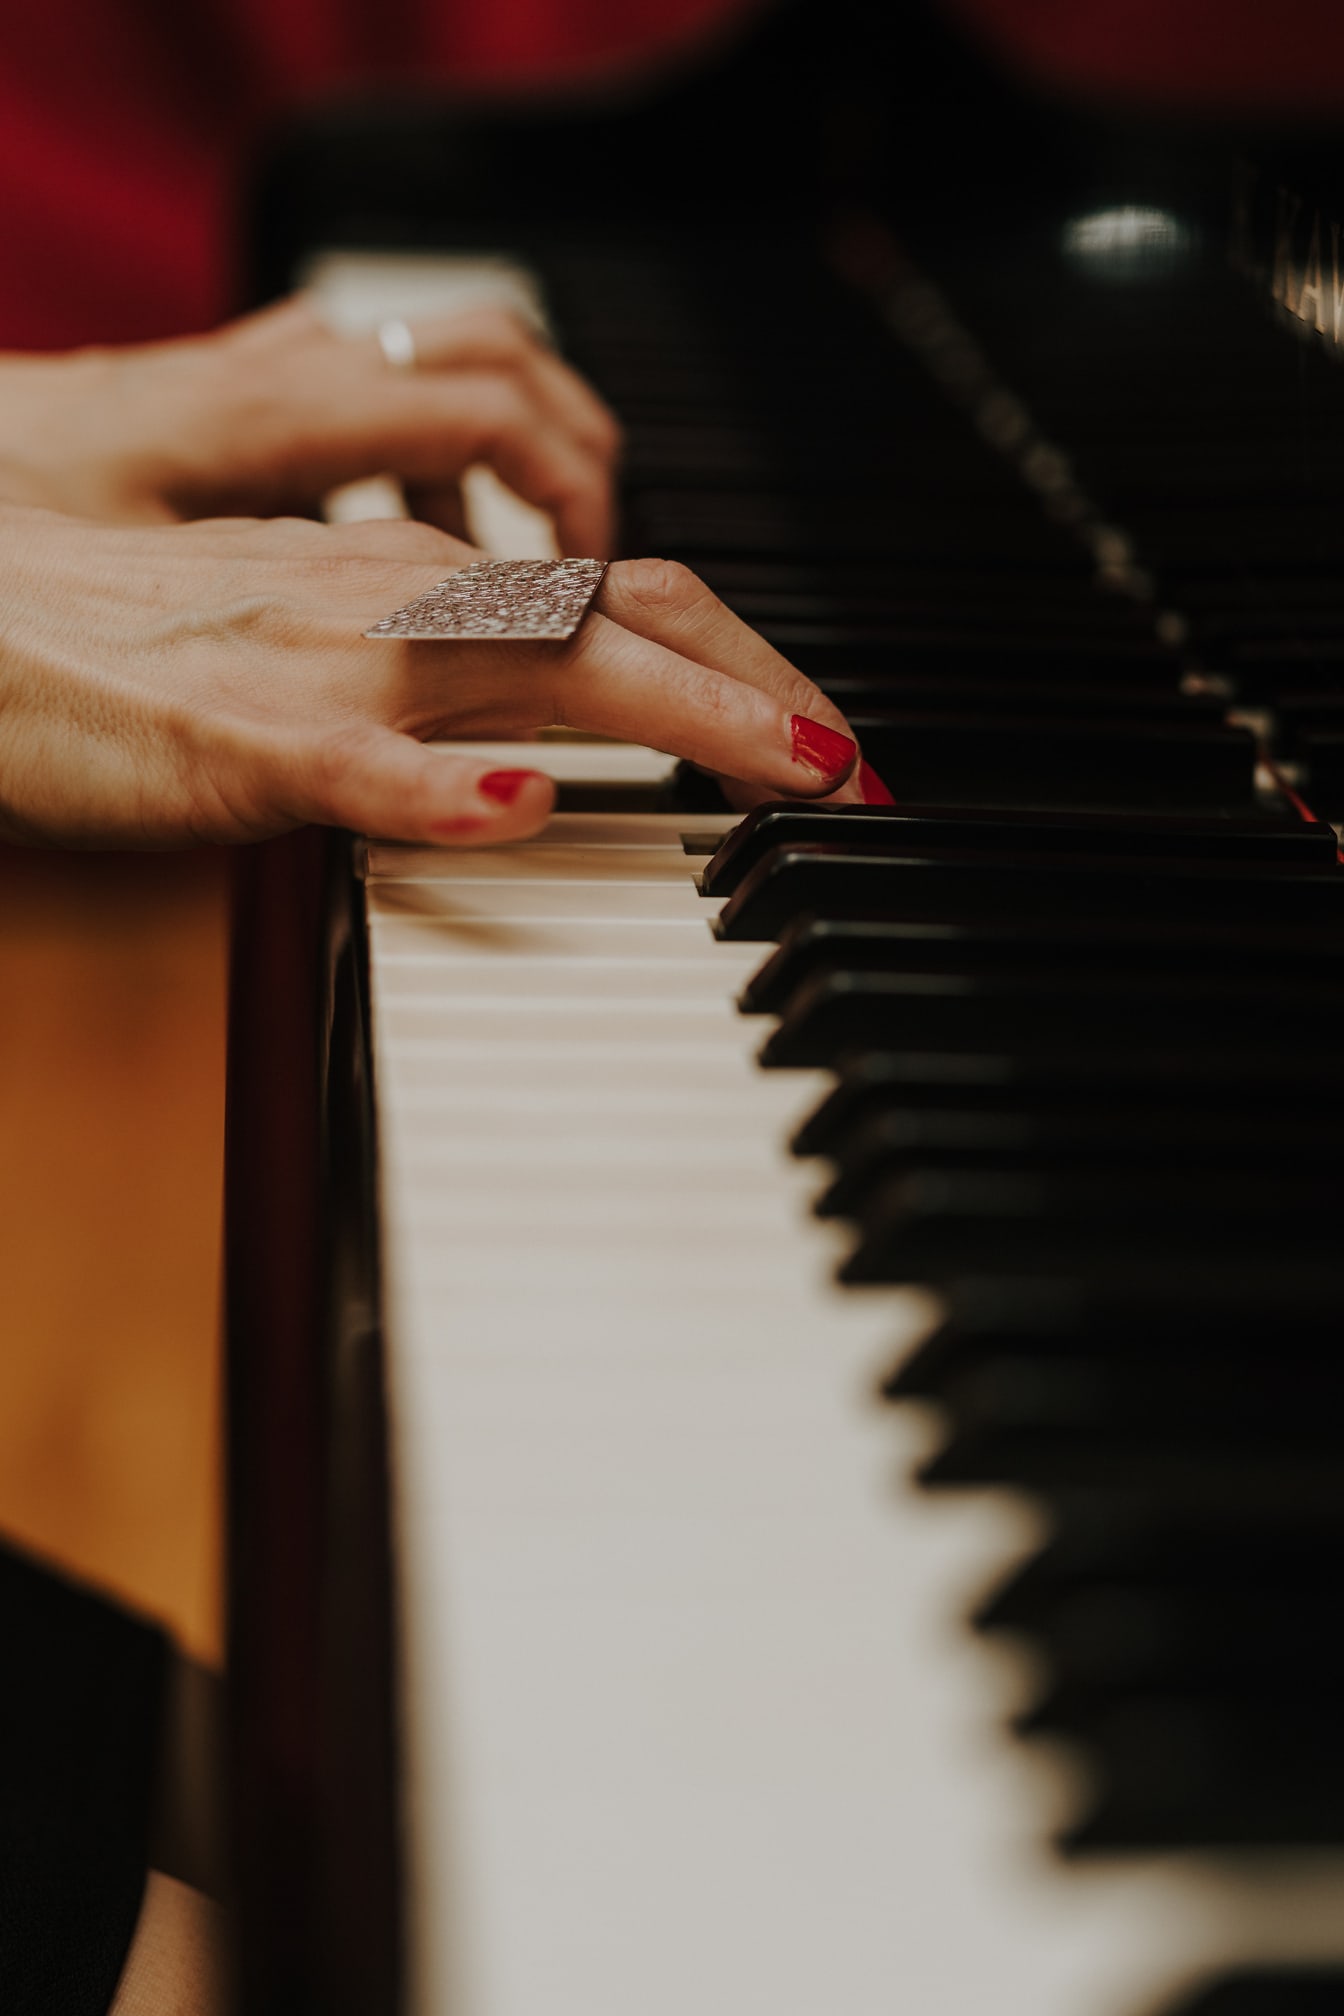 Крупный план руки, играющей на пианино, с красным лаком для ногтей на пальцах